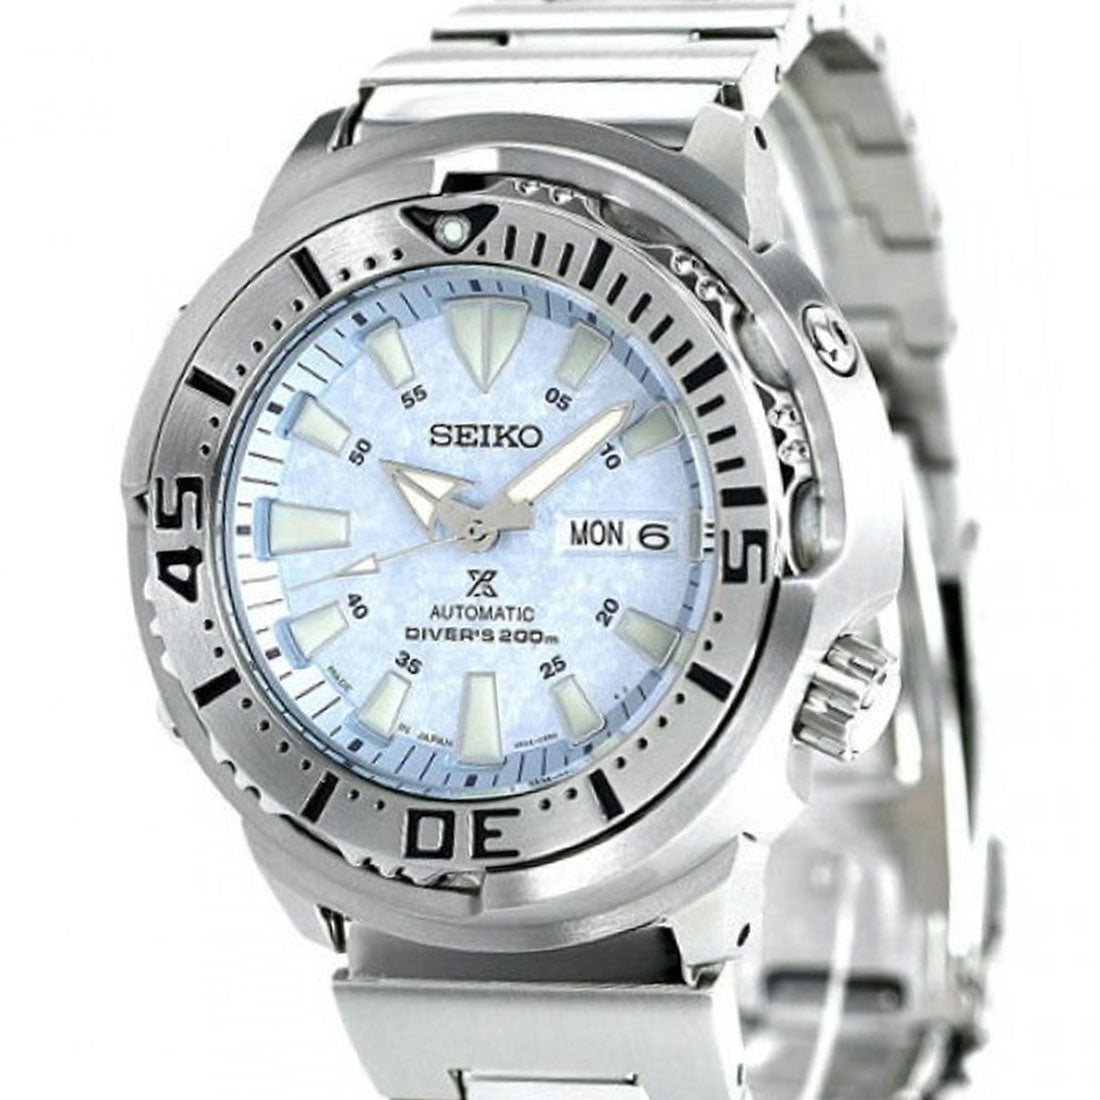 Seiko Prospex JDM Baby Tuna Ice Frost SBDY053 SBDY053J1 SBDY053J Limited Edition Watch -Seiko